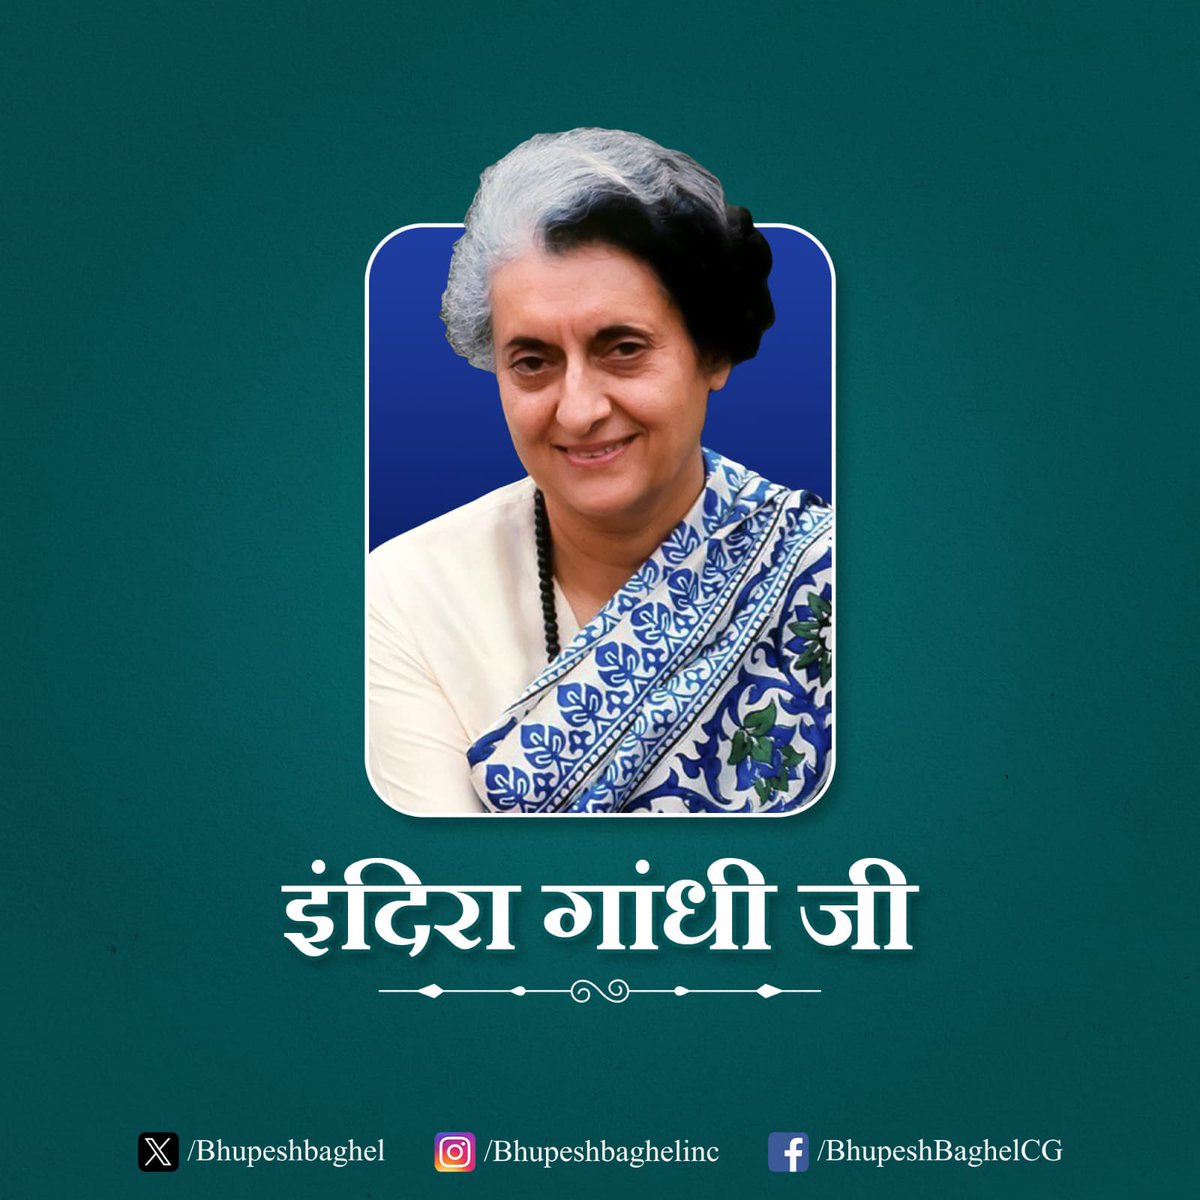 भारत को एक सशक्त और मज़बूत राष्ट्र के रूप में पहचान दिलाने वाली, भारत की प्रथम महिला प्रधानमंत्री, लौह महिला, भारत रत्न स्व. श्रीमती इंदिरा गांधी जी की जयंती पर उन्हें सादर नमन। भारत की एकता एवं अखंडता को बनाए रखने हेतु अपना सर्वस्व न्यौछावर करने वाली इंदिरा जी का जीवन हम सभी